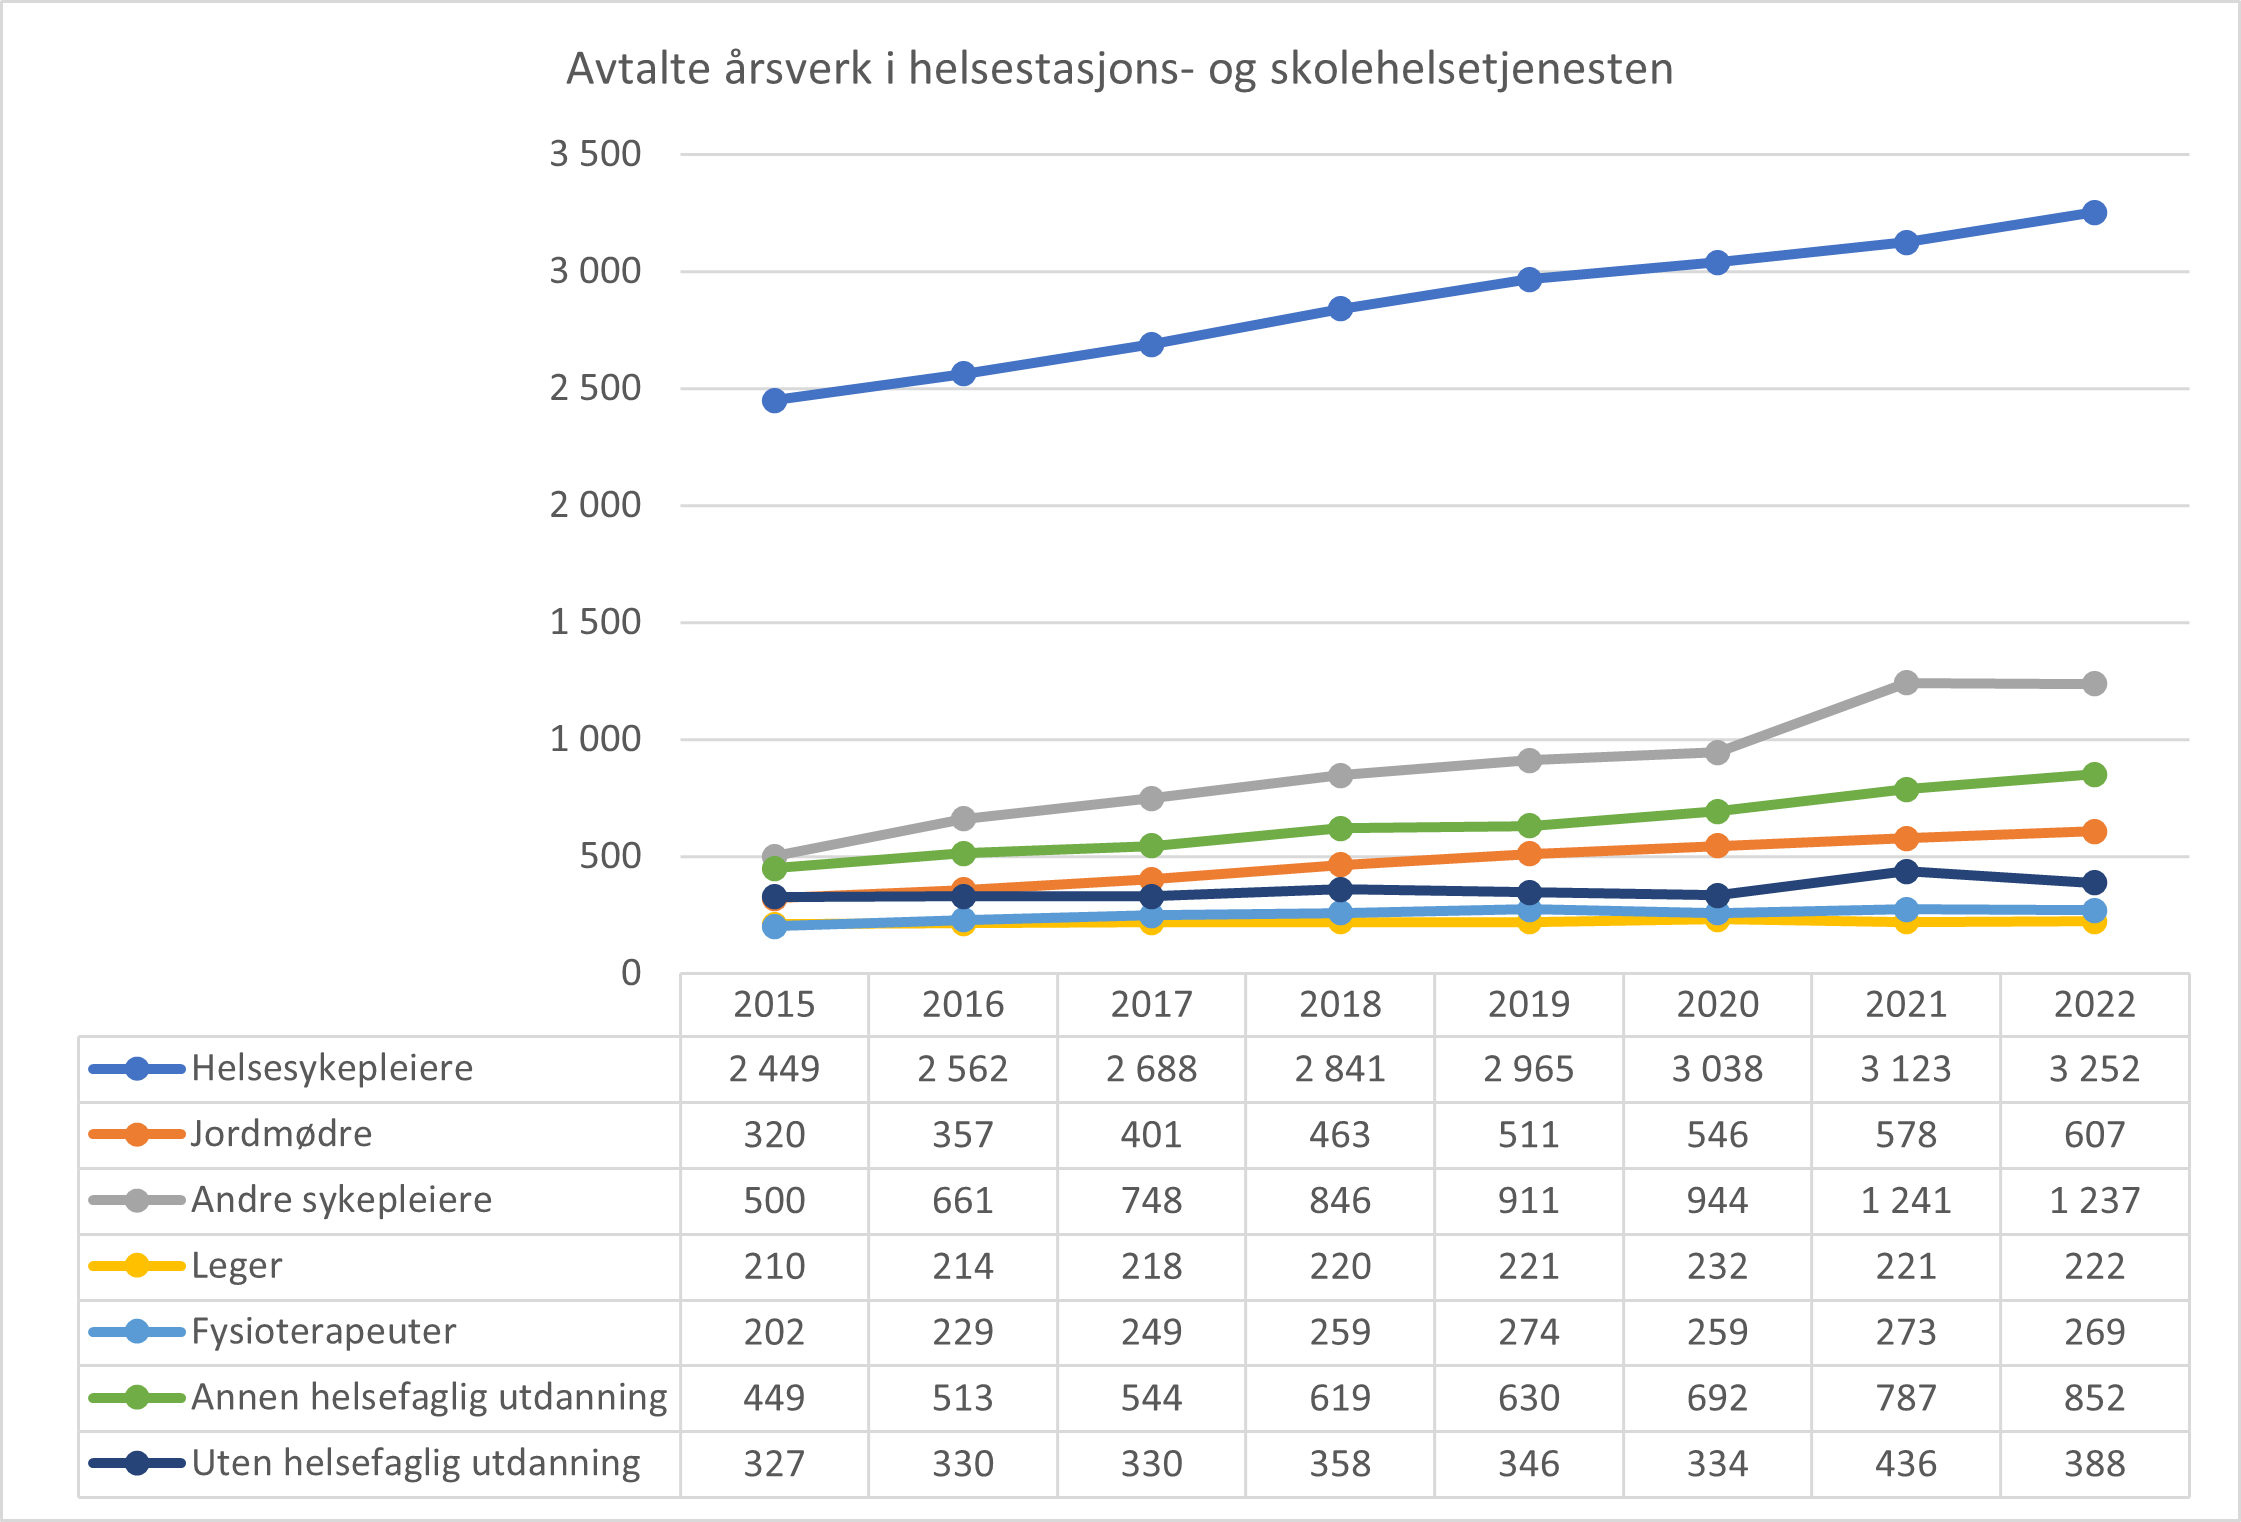 Avtale årsverk i helsestasjons- og skolehelsetjenesten fordelt på utdanning. Landet. 2015-2022.